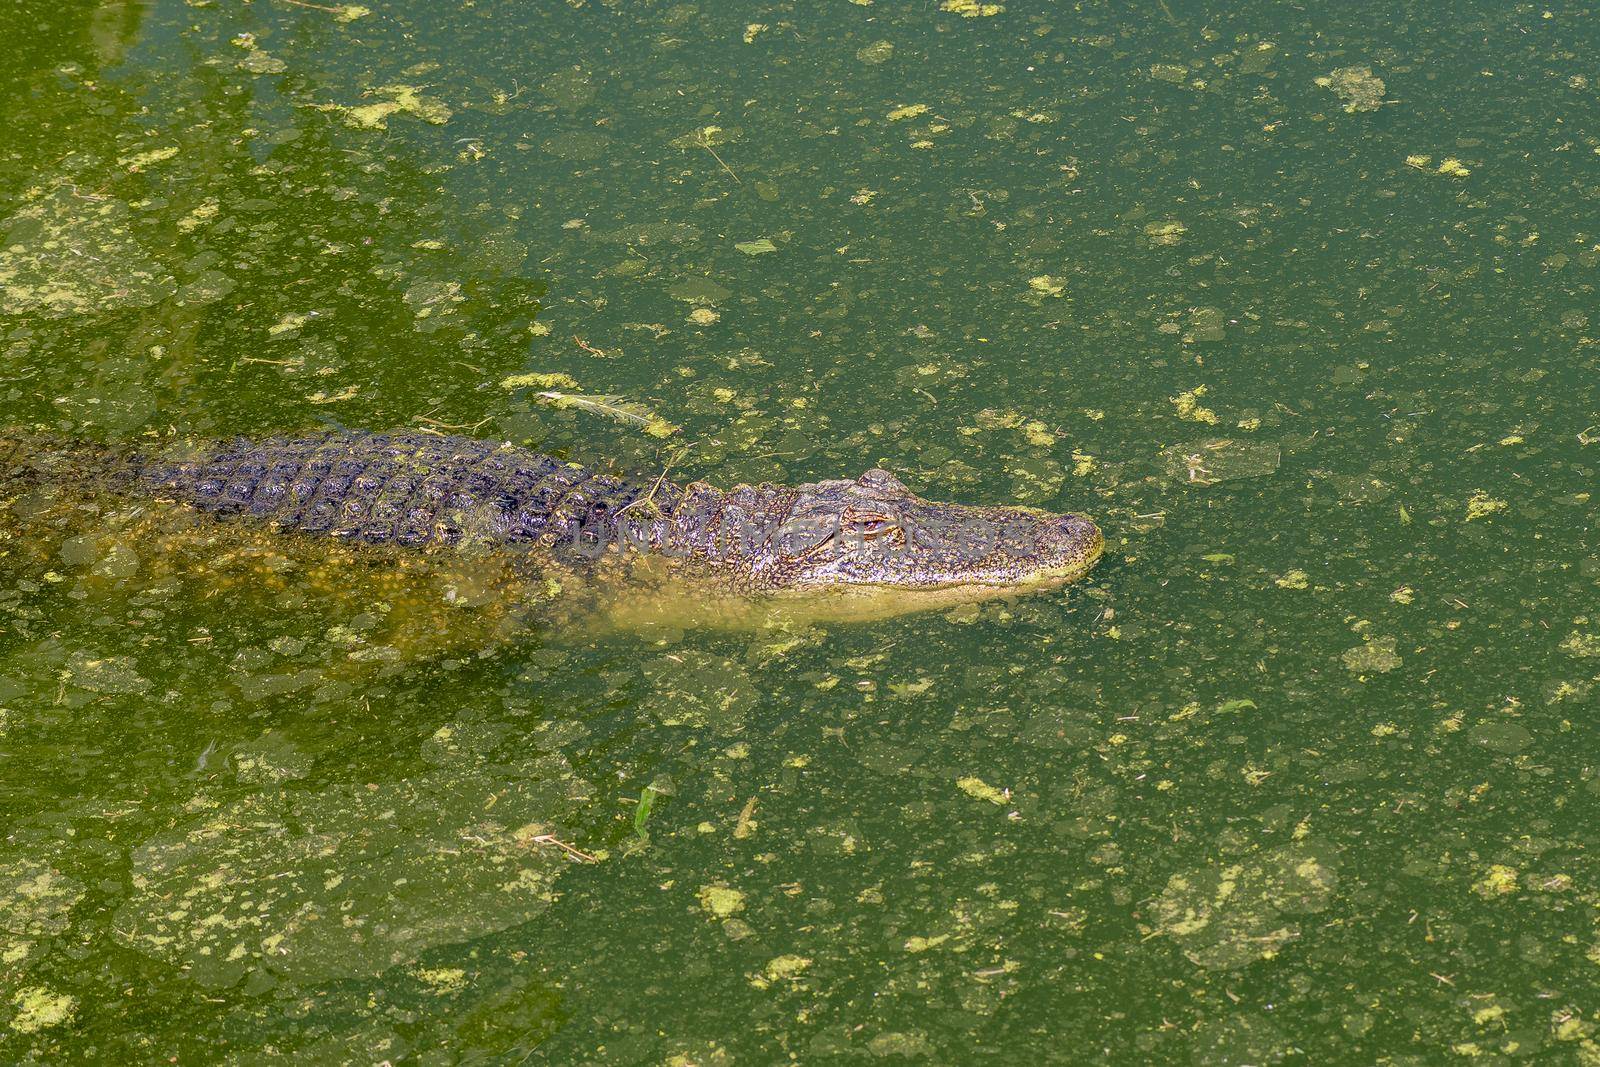 An alligator, Alligator mississipiensis, in water by dpreezg